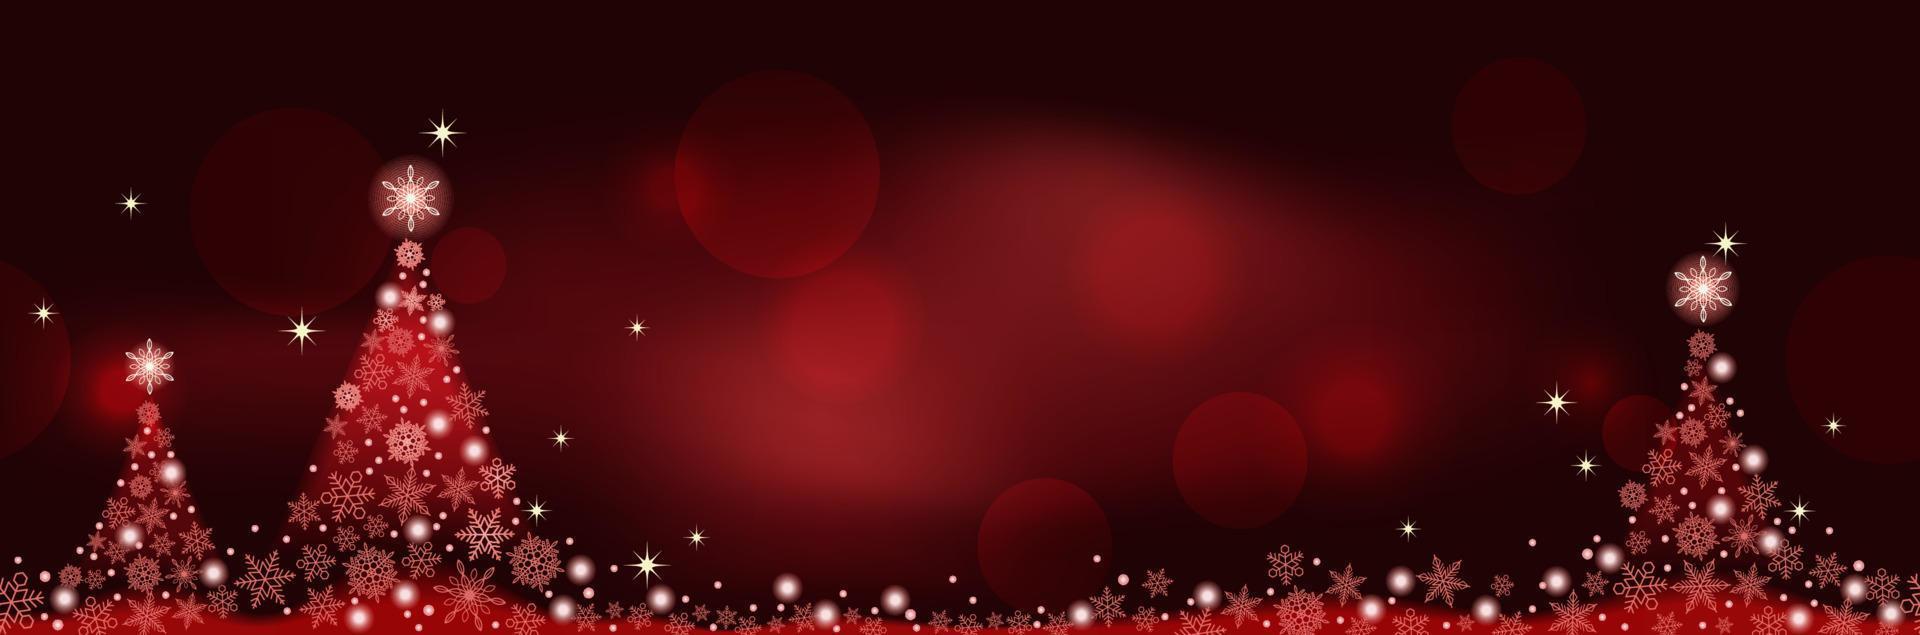 abstracte rode winter naadloze vector achtergrond met kerstbomen en tekst ruimte. horizontaal herhaalbaar.